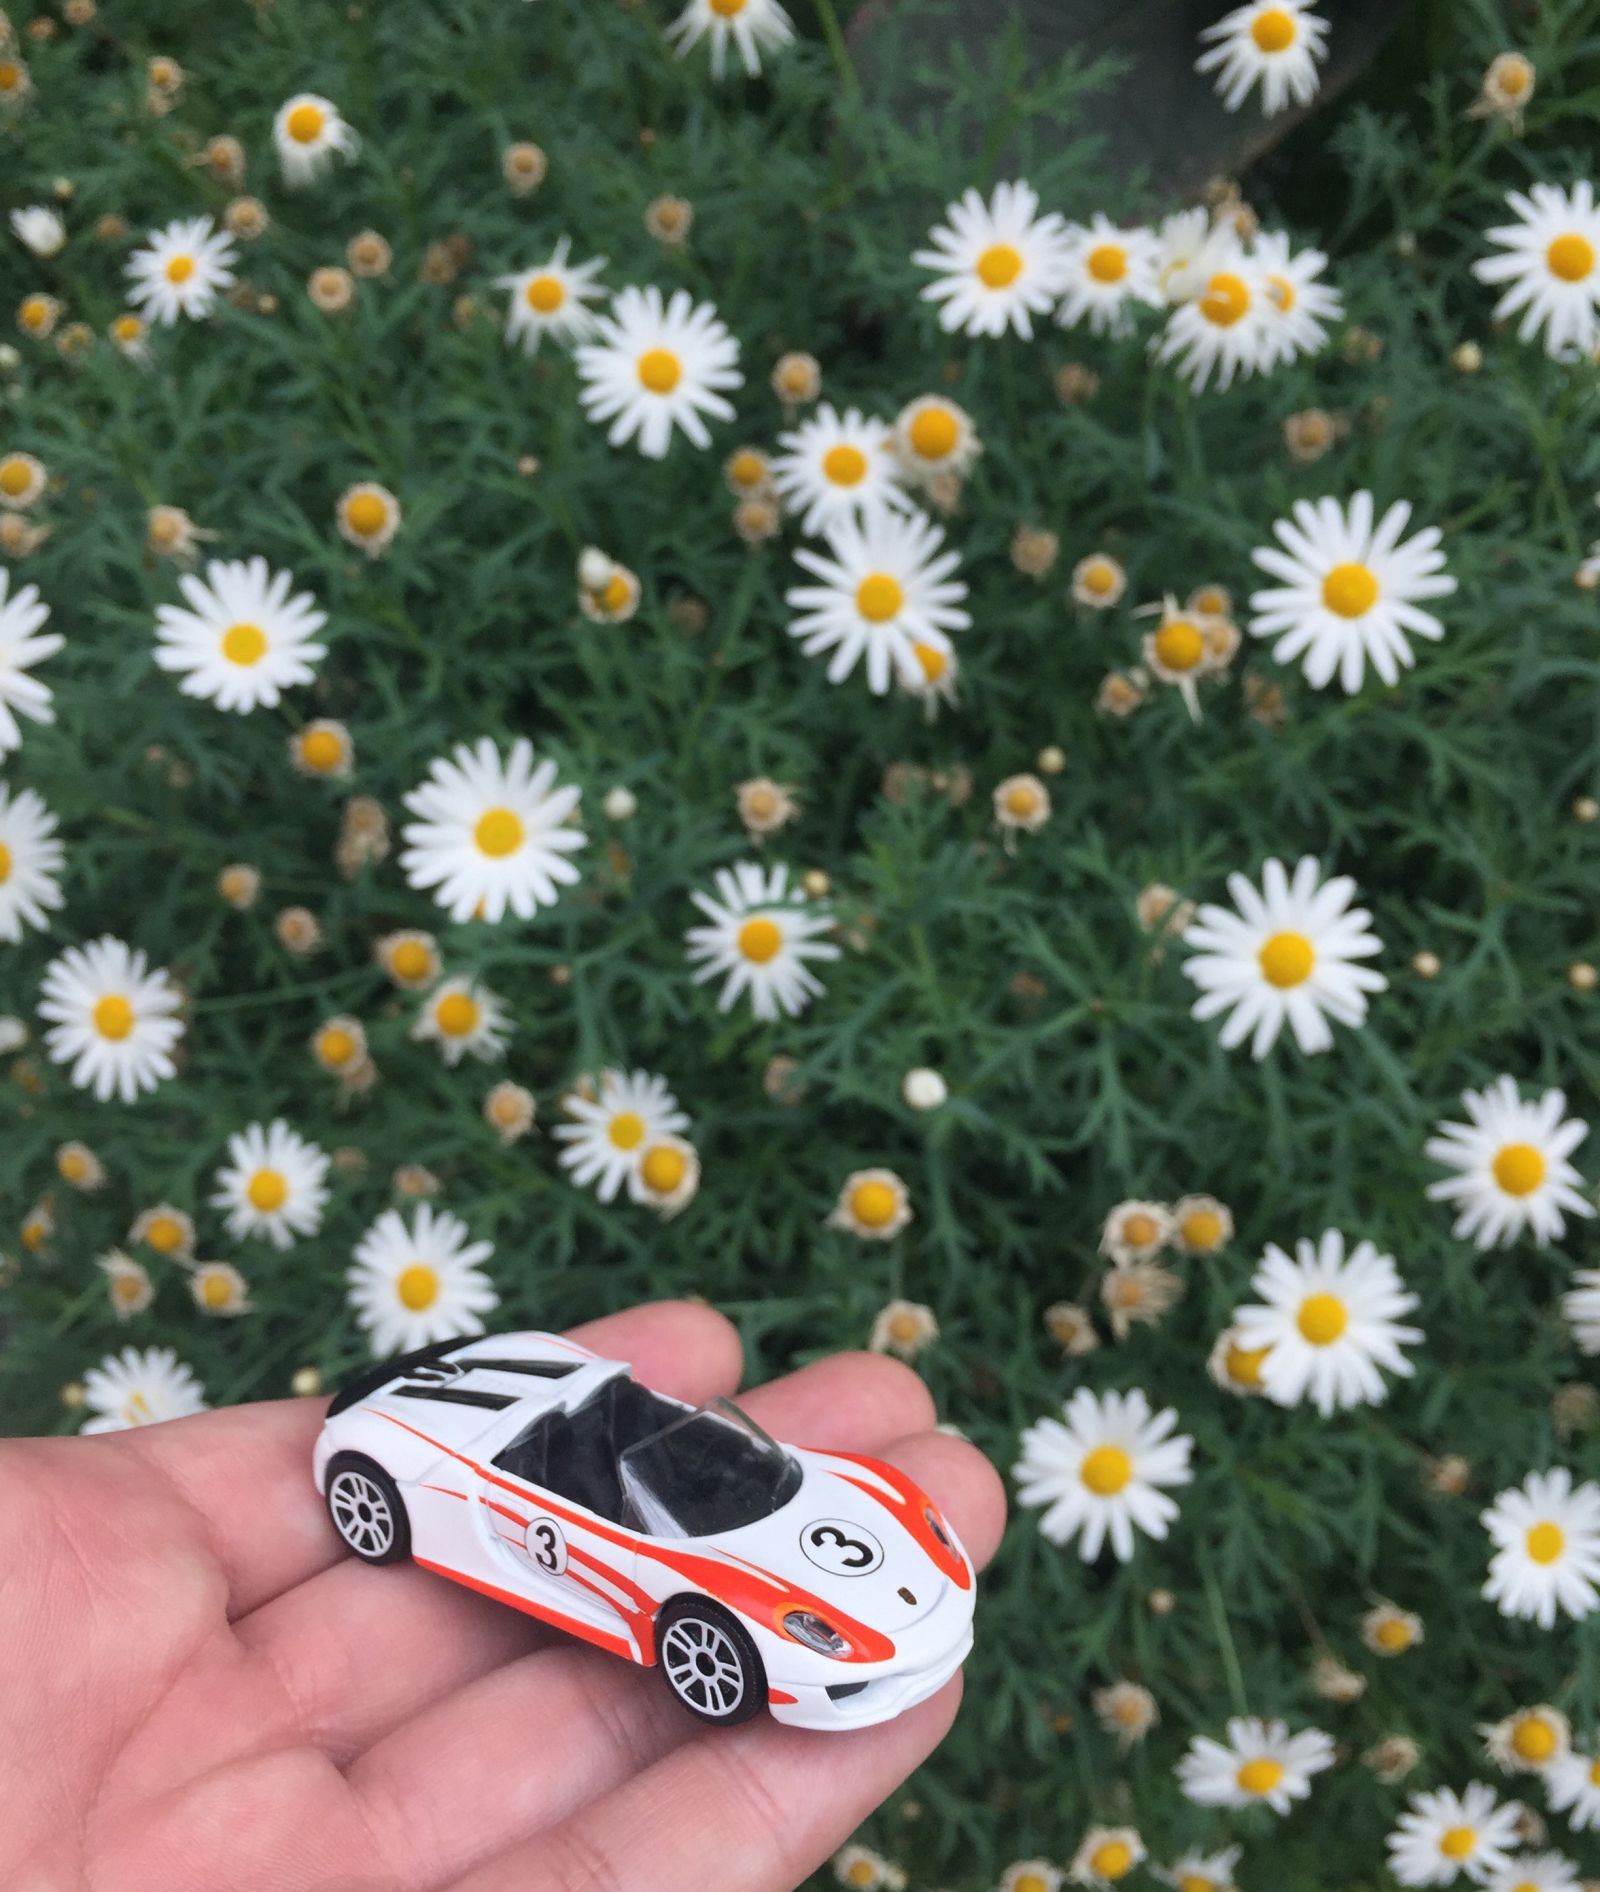 Such pretty flowers and a pretty Porsche!